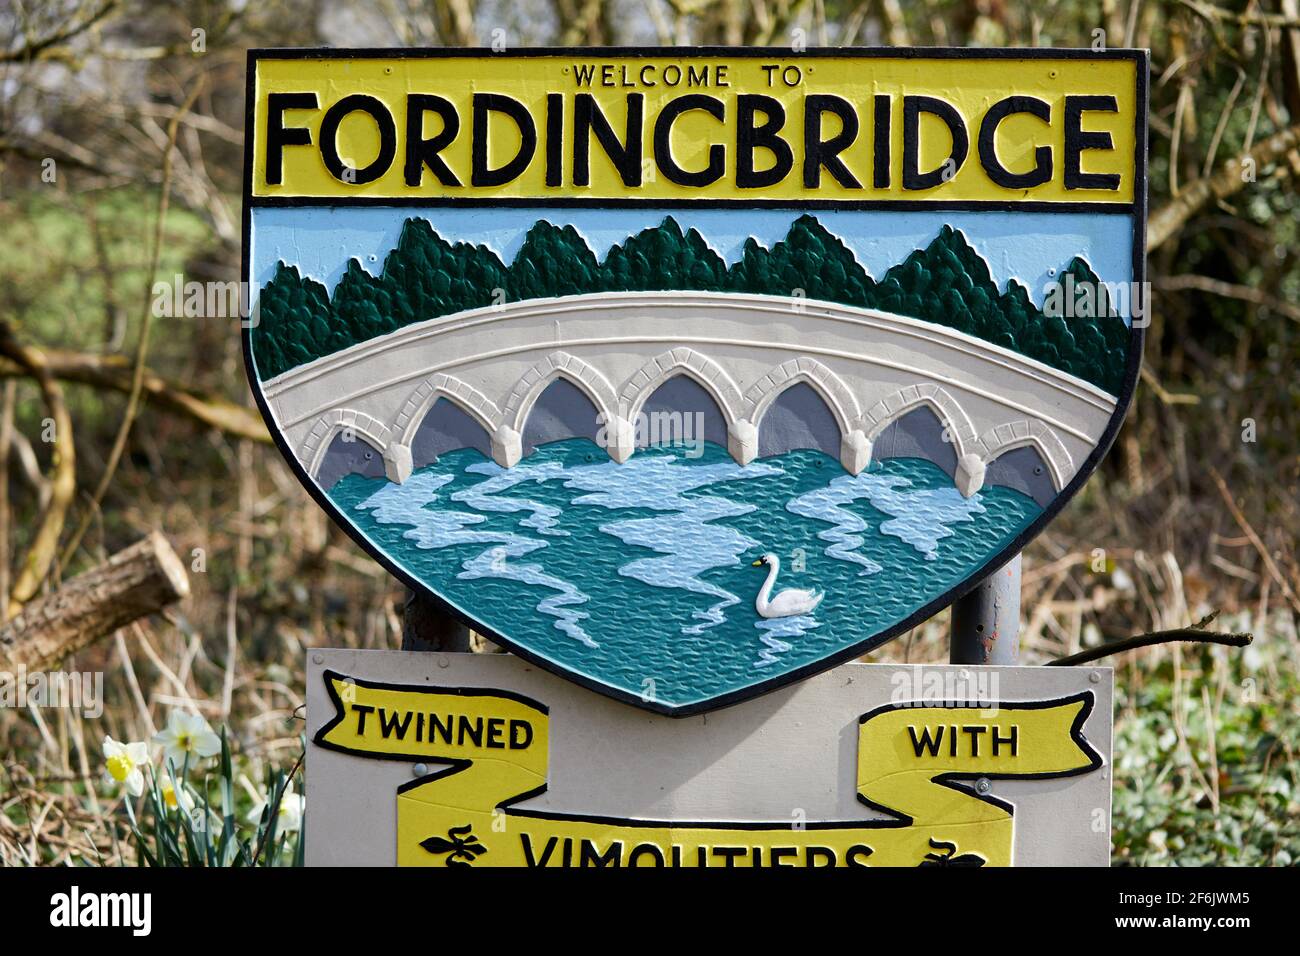 Fordingbridge, Reino Unido - 22 Mar 2021: Una señal de carretera para la ciudad de Fordingbridge, Hampshire, recibe a los visitantes, mostrando una imagen del puente medieval de la ciudad. Foto de stock